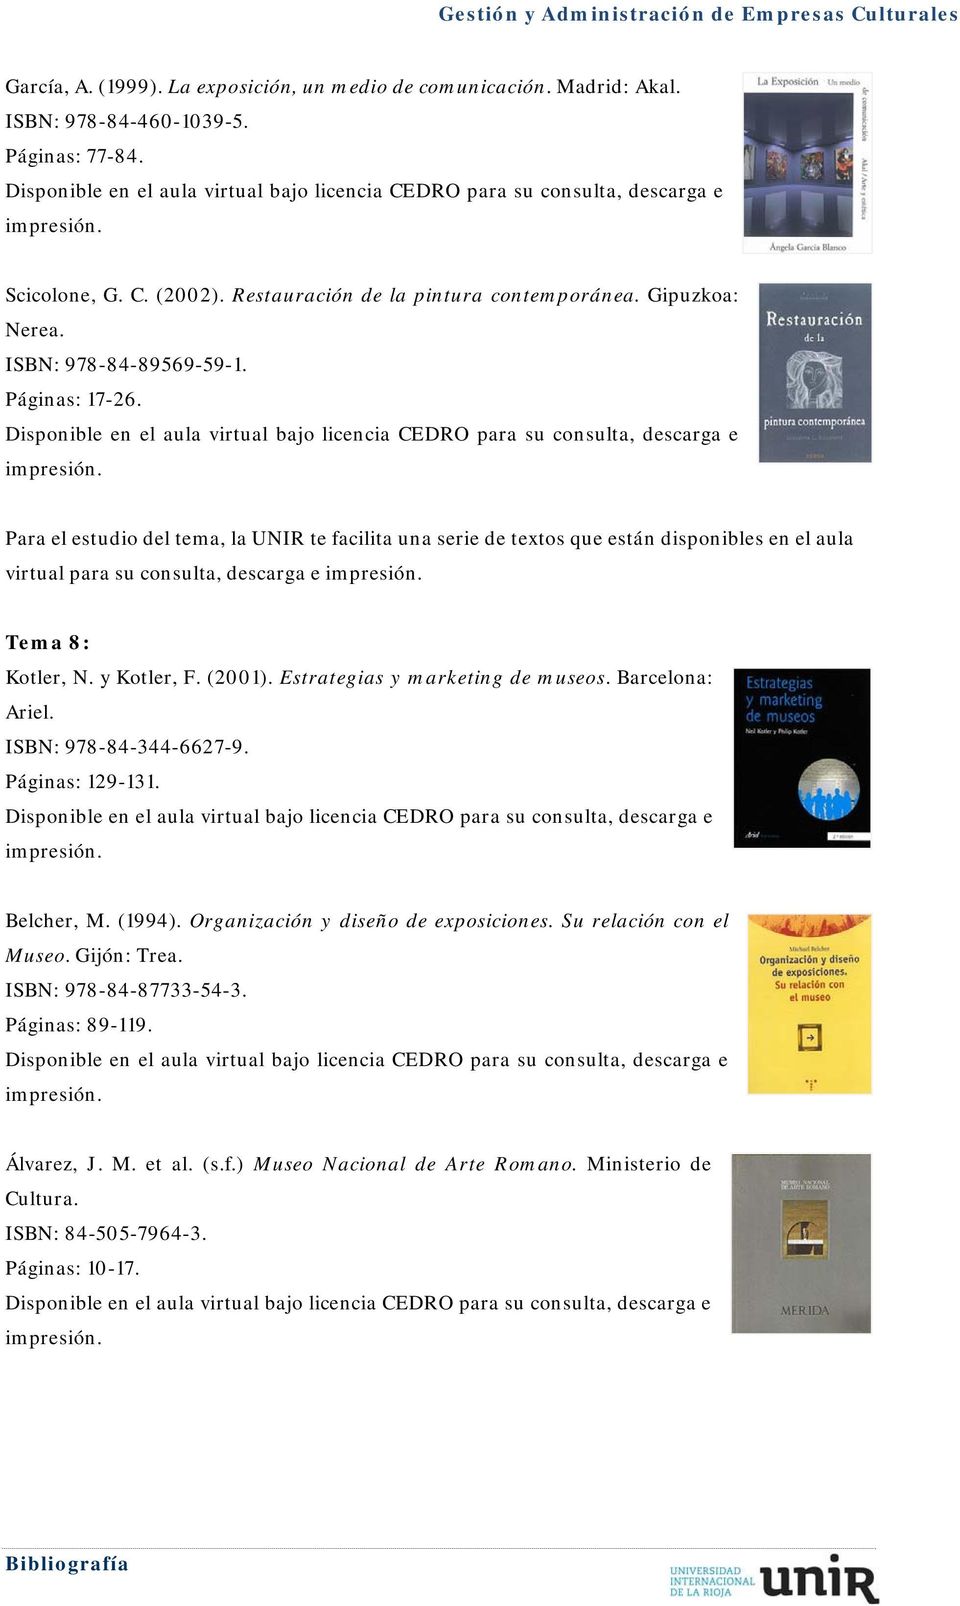 (2001). Estrategias y marketing de museos. Barcelona: Ariel. ISBN: 978-84-344-6627-9. Páginas: 129-131. Belcher, M. (1994). Organización y diseño de exposiciones.